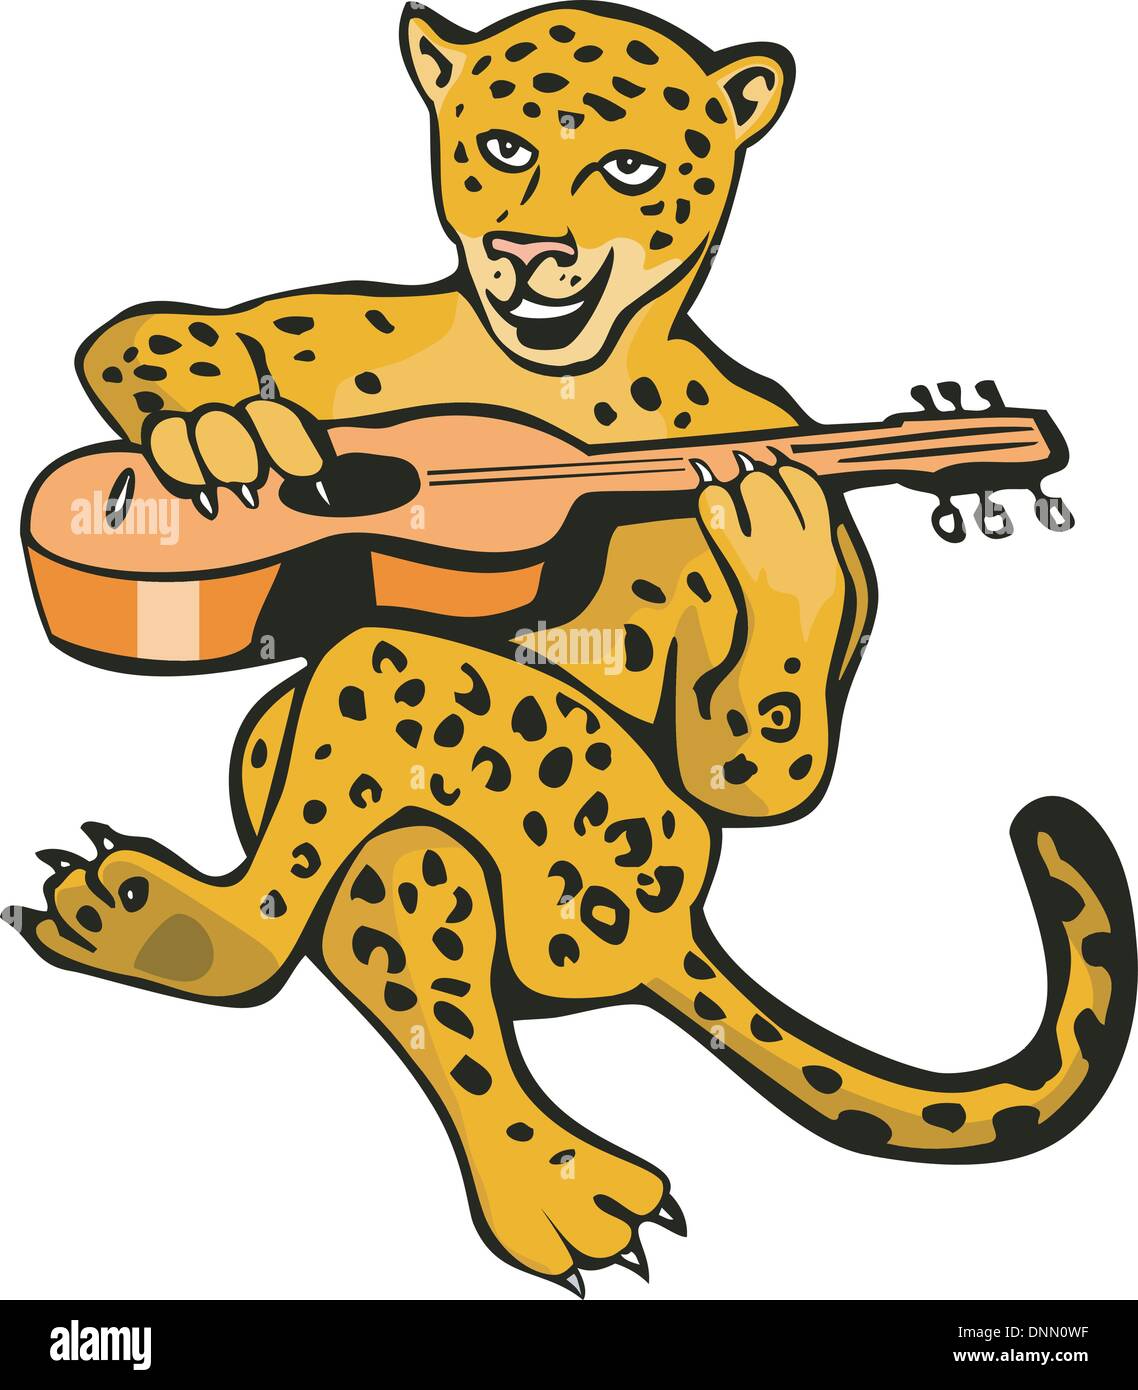 Abbildung eines Cartoon-Jaguar-Löwen isoliert auf weißem Hintergrund getan im retro-Stil Gitarre zu spielen. Stock Vektor